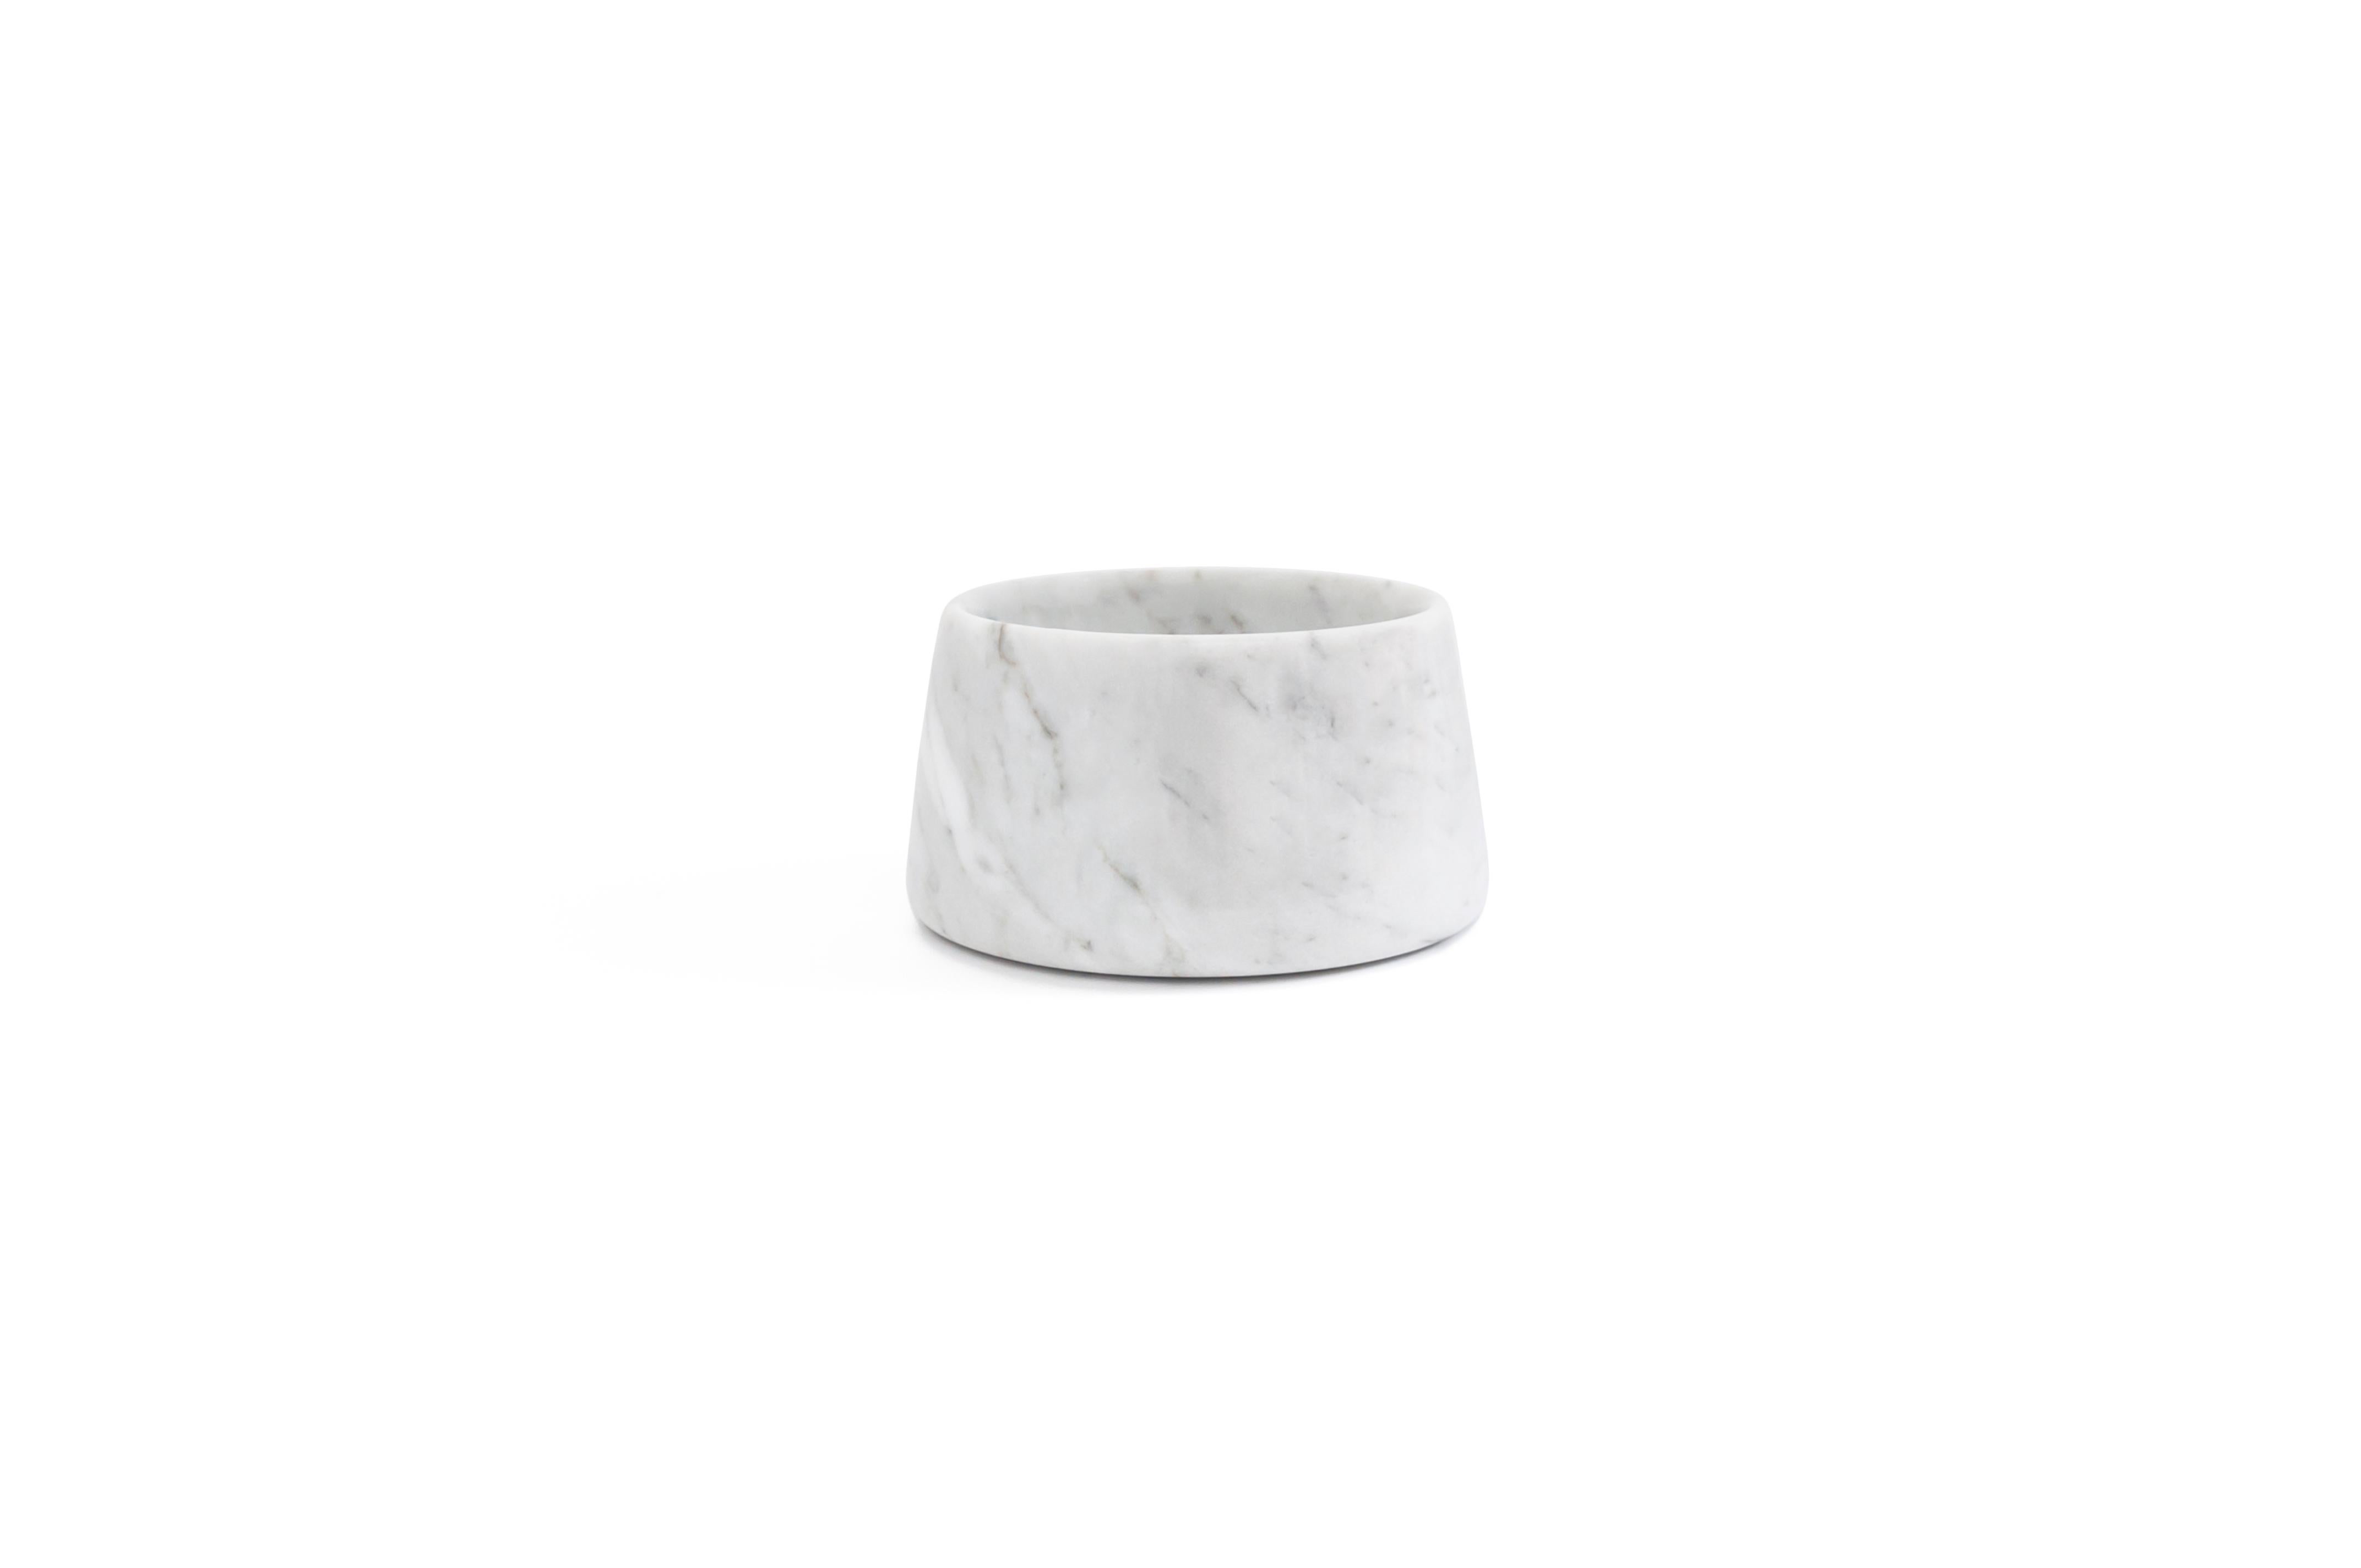 Weißer Carrara-Marmornapf für Katzen oder Hunde, hergestellt in Italien, Carrara. Größe klein.
Jedes Stück ist ein Unikat (jeder Marmorblock hat eine andere Maserung und Schattierung) und wird von italienischen Handwerkern, die seit Generationen auf